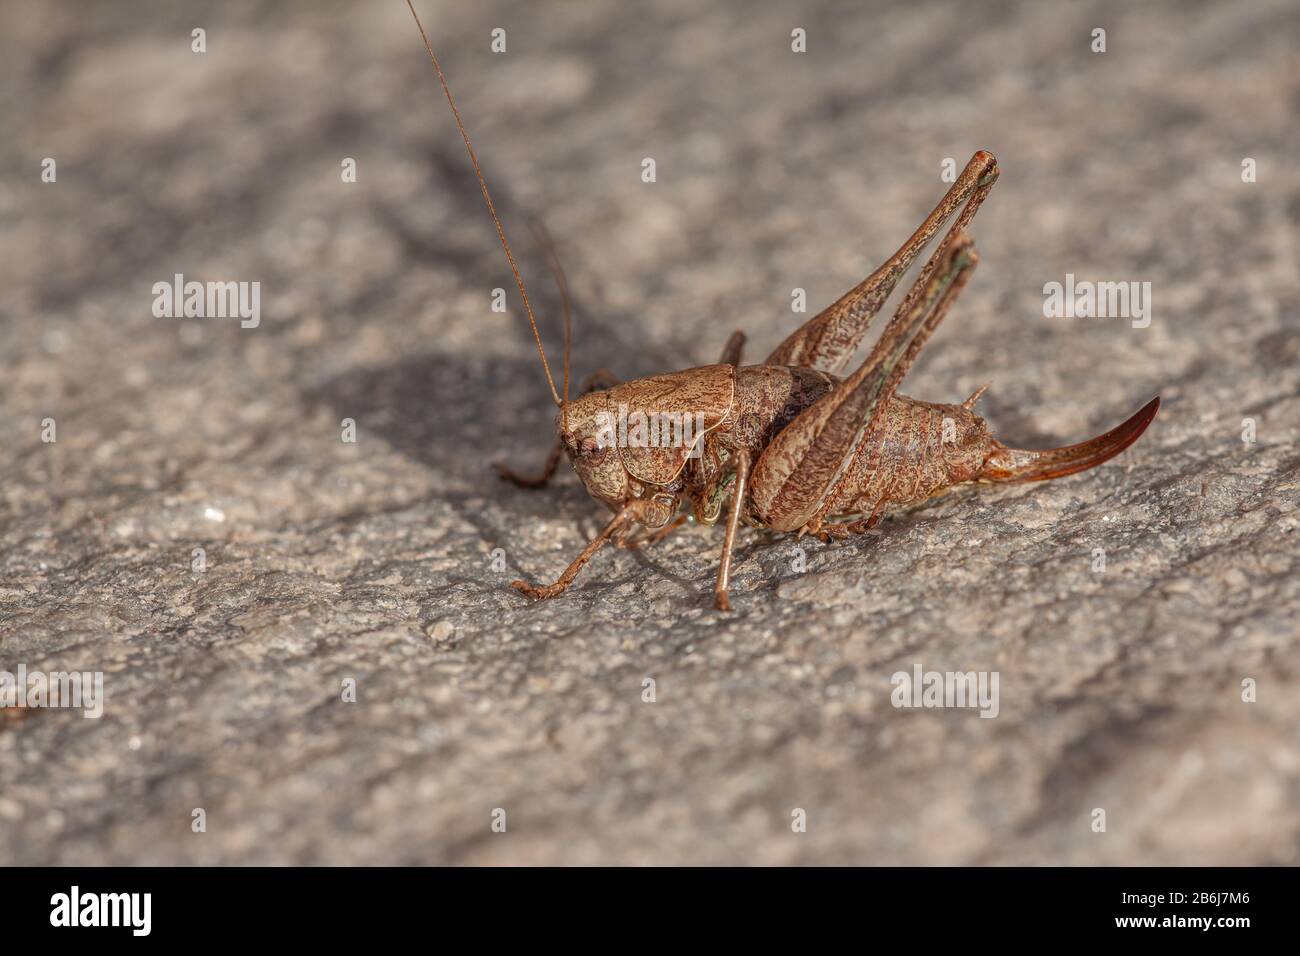 Locusta marrone immagini e fotografie stock ad alta risoluzione - Alamy